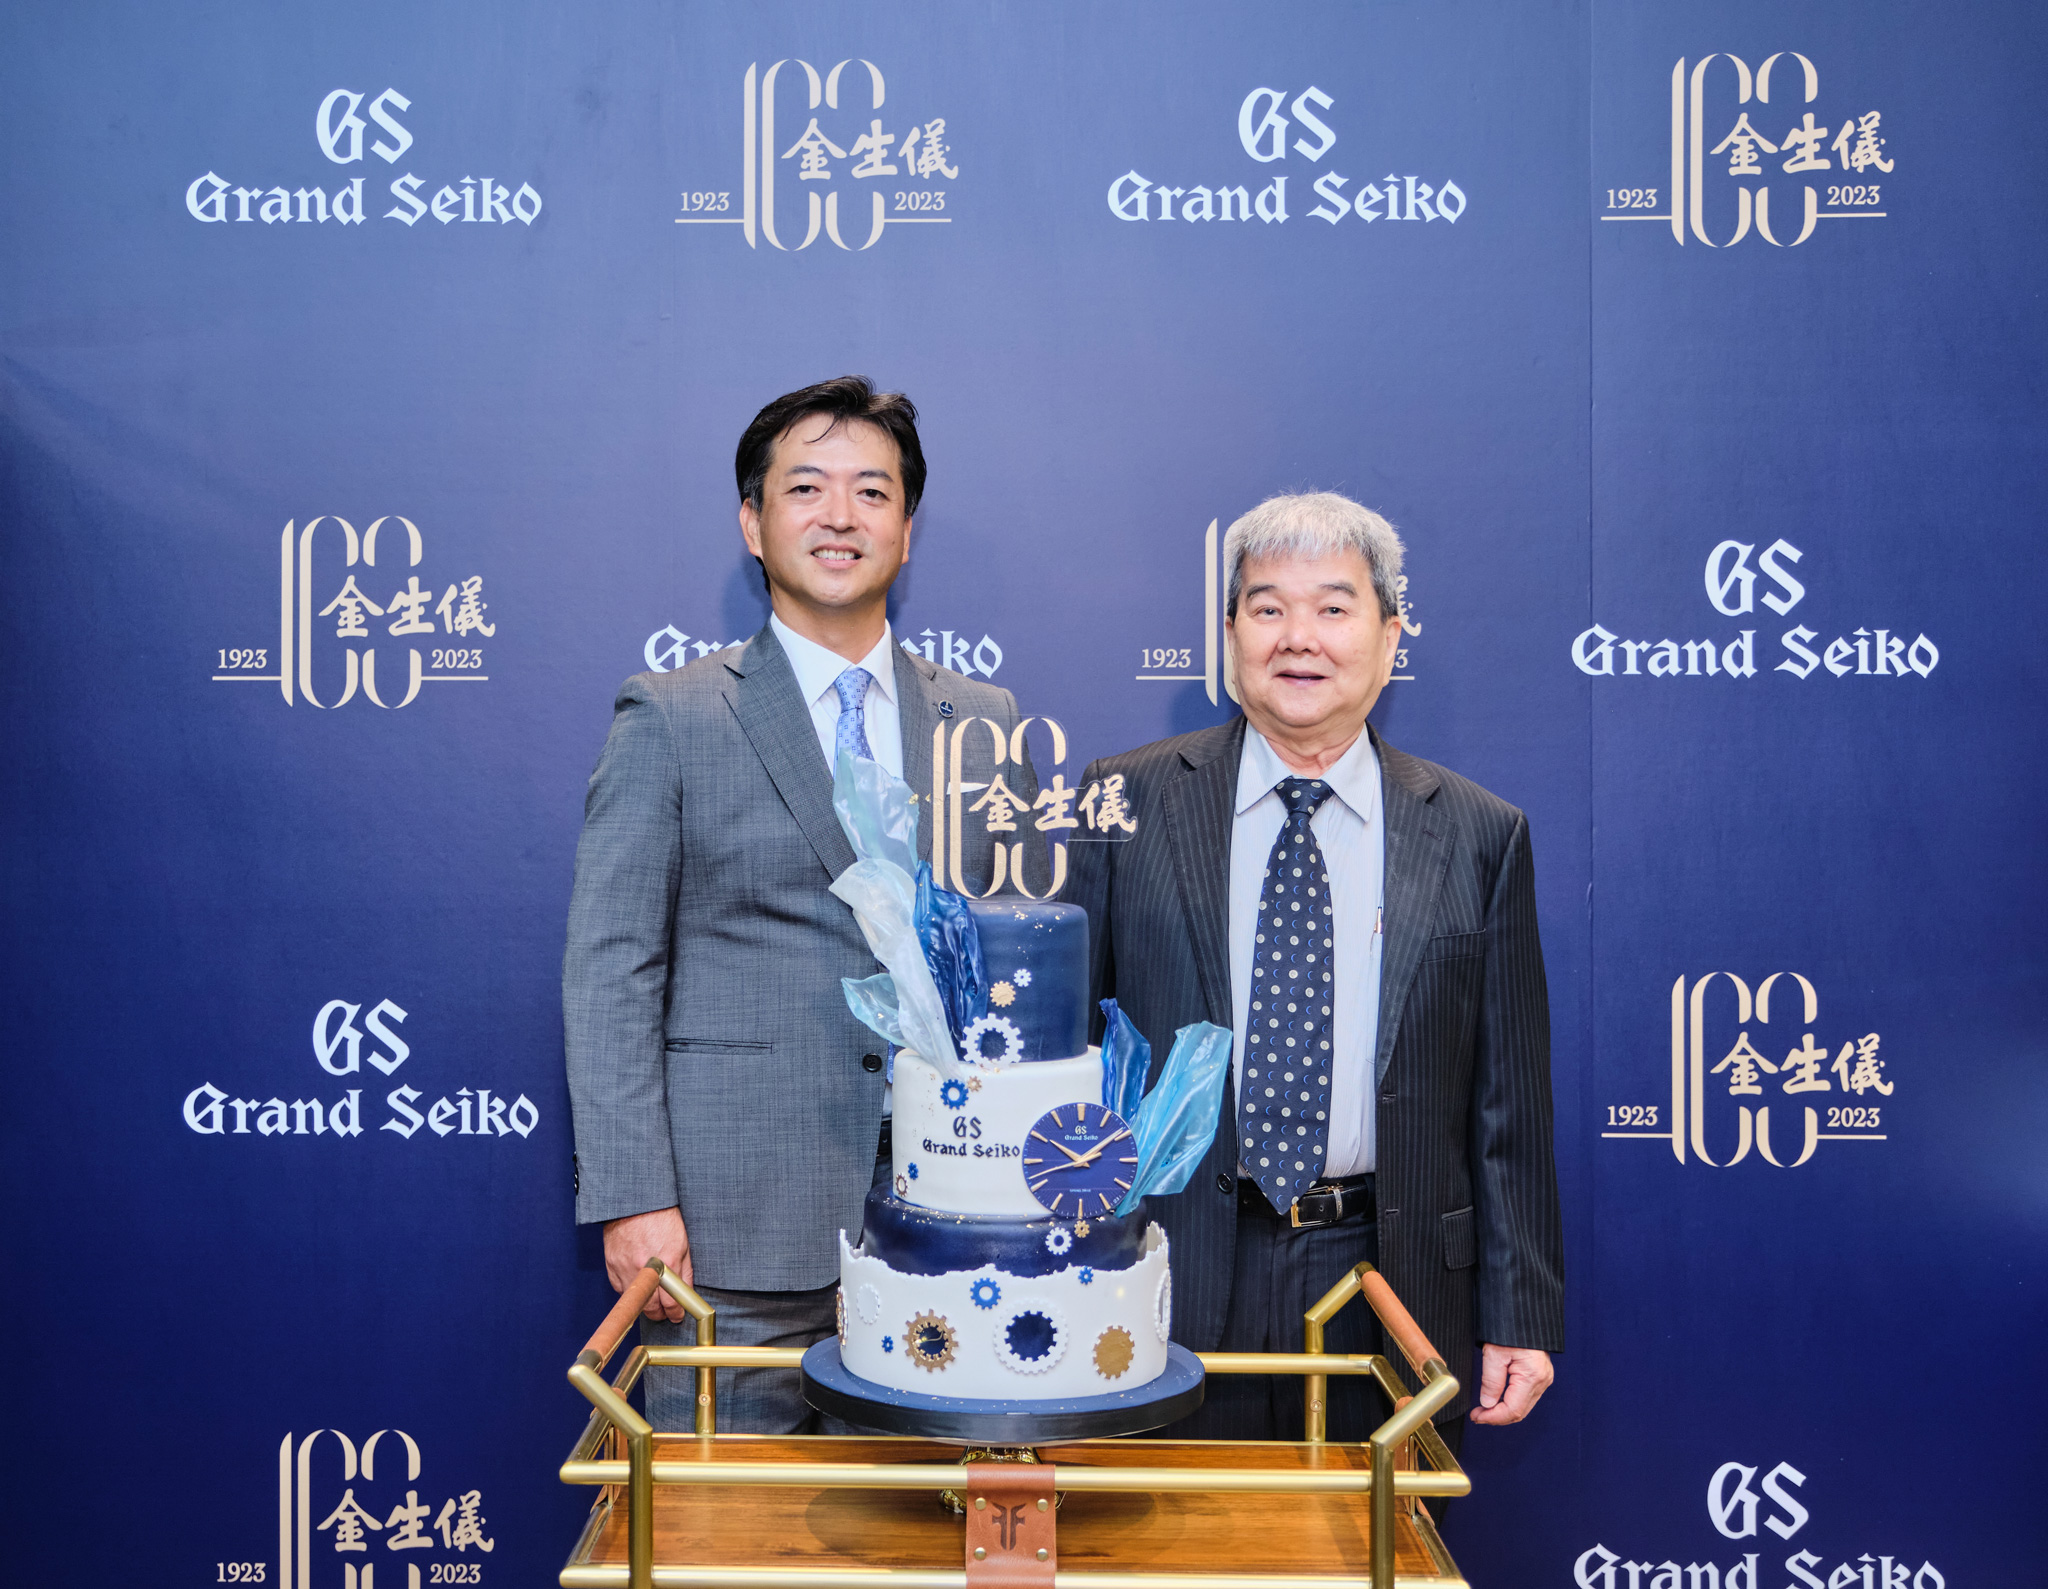 慶祝金生儀創立一百周年，Grand Seiko致上慶祝蛋糕以紀念長久以來累積的情誼